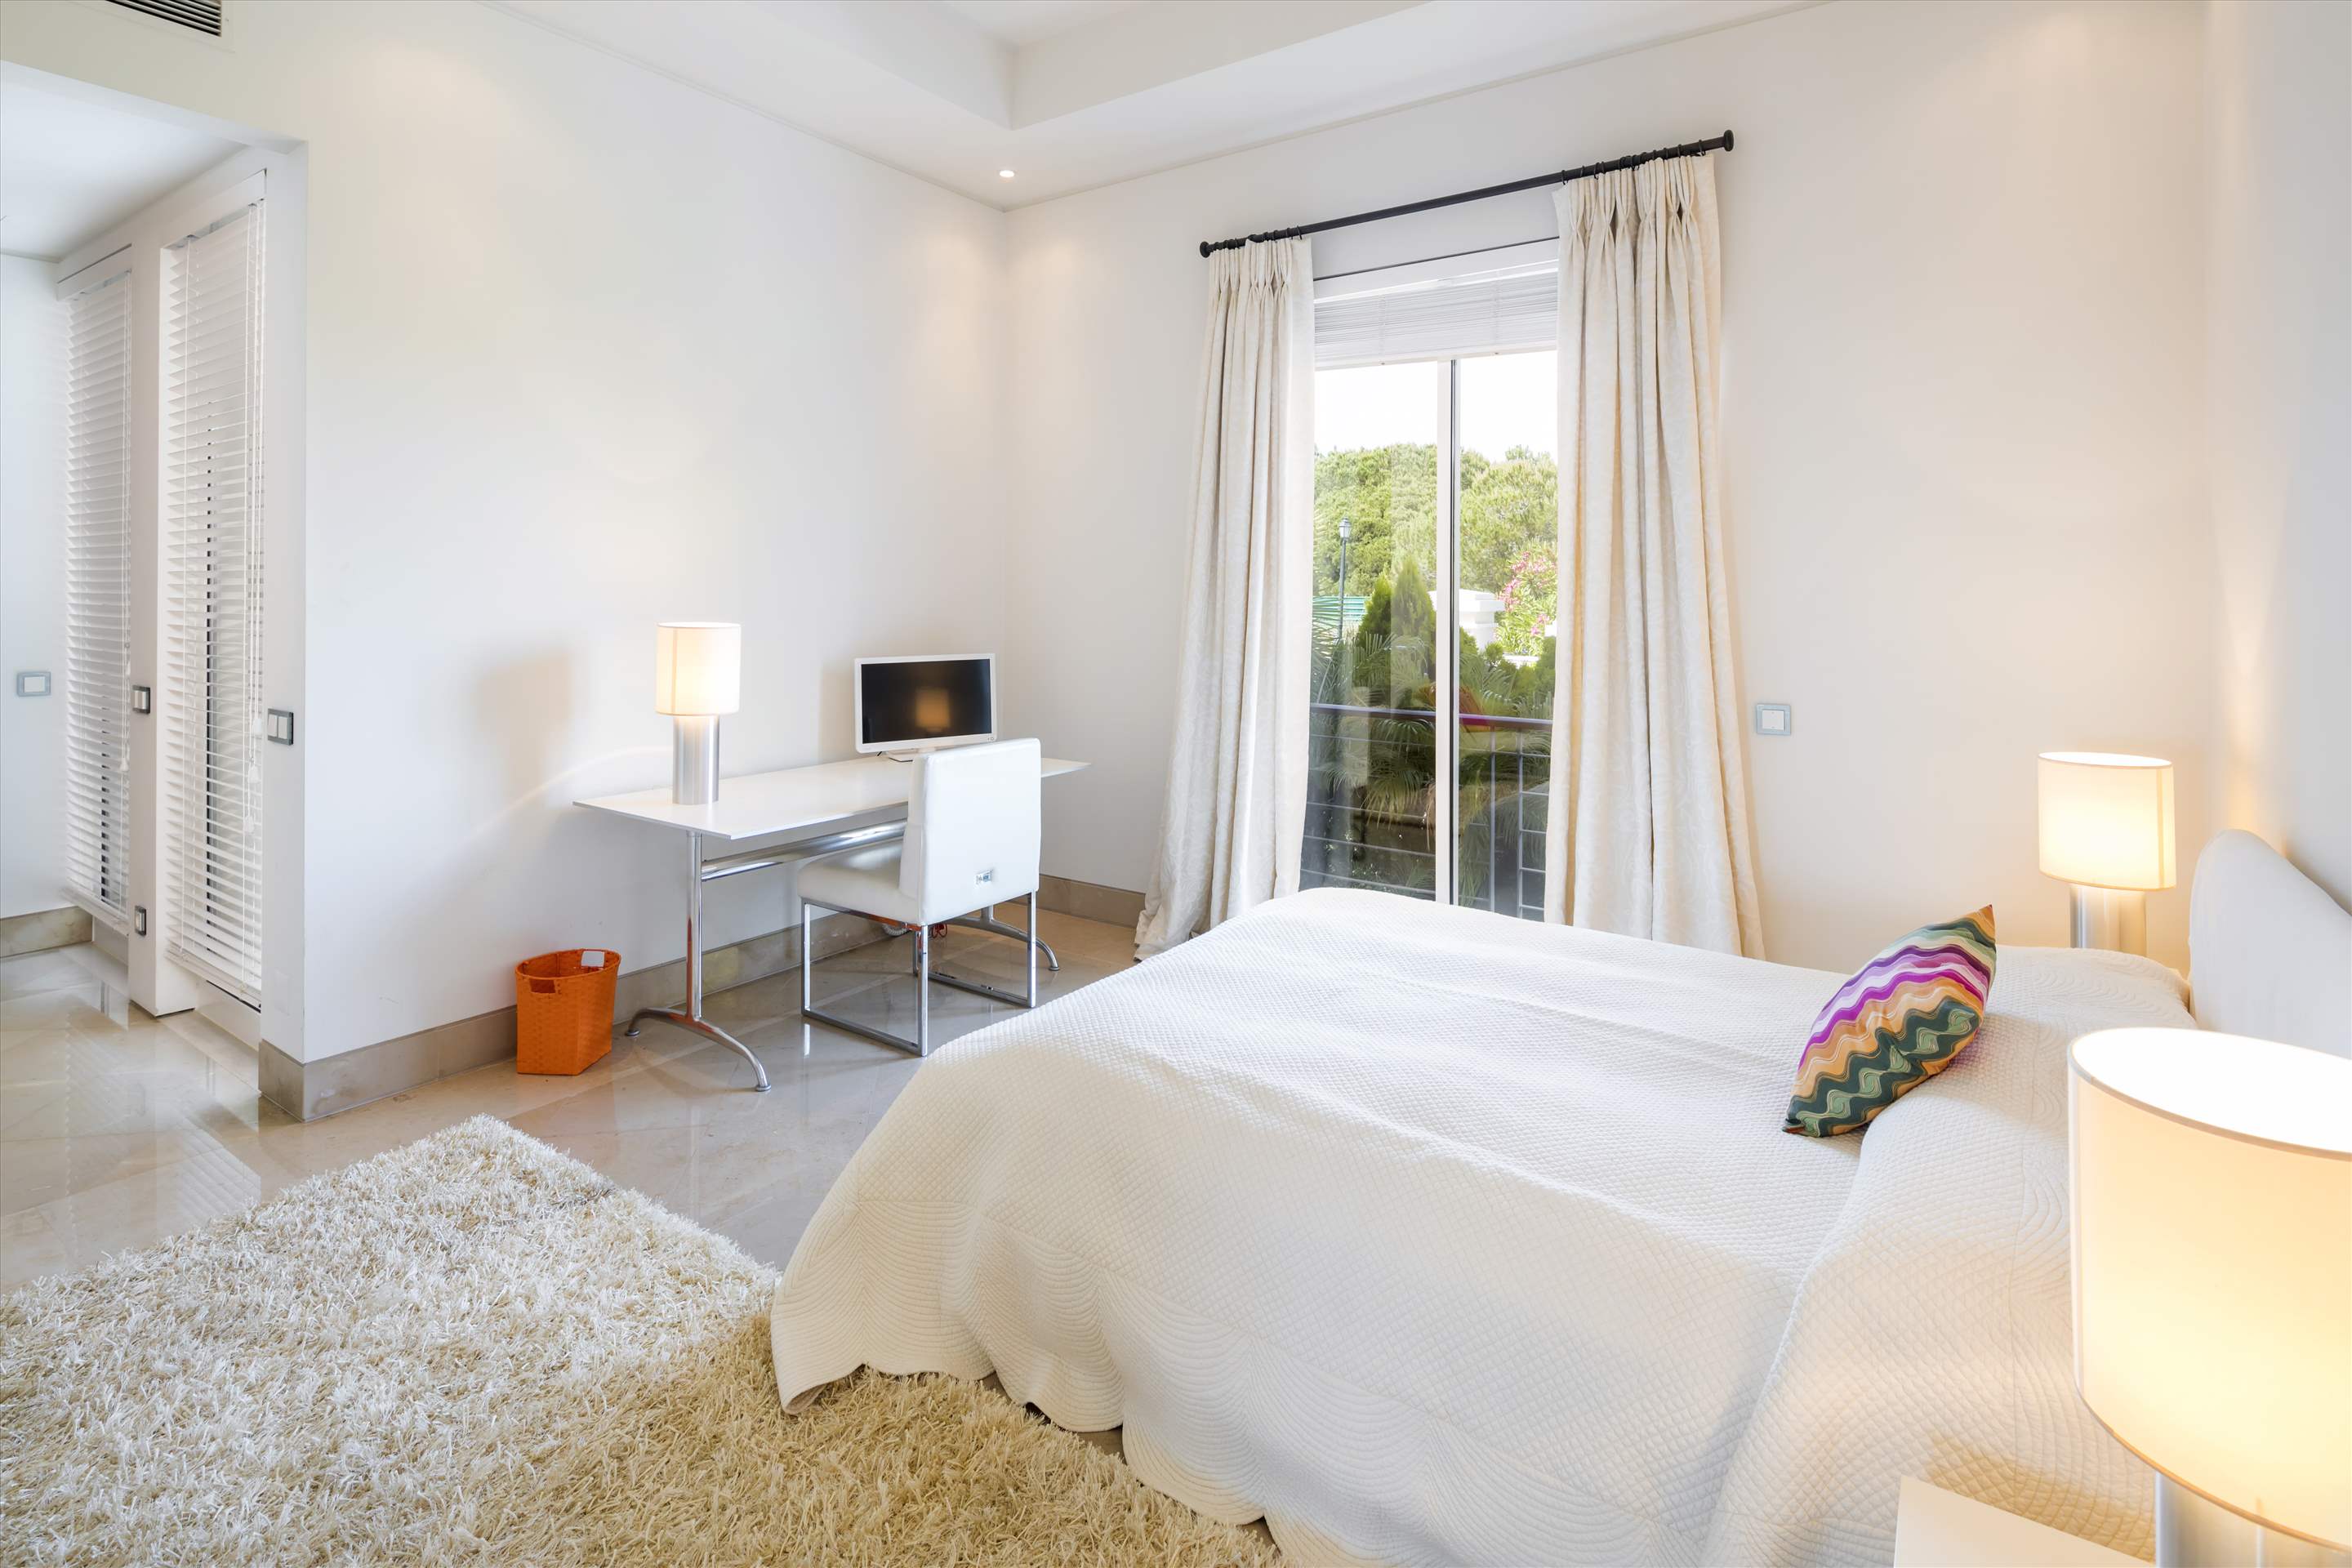 Villa Majestosa, 6 Bedrooms, 6 bedroom villa in Quinta do Lago, Algarve Photo #24